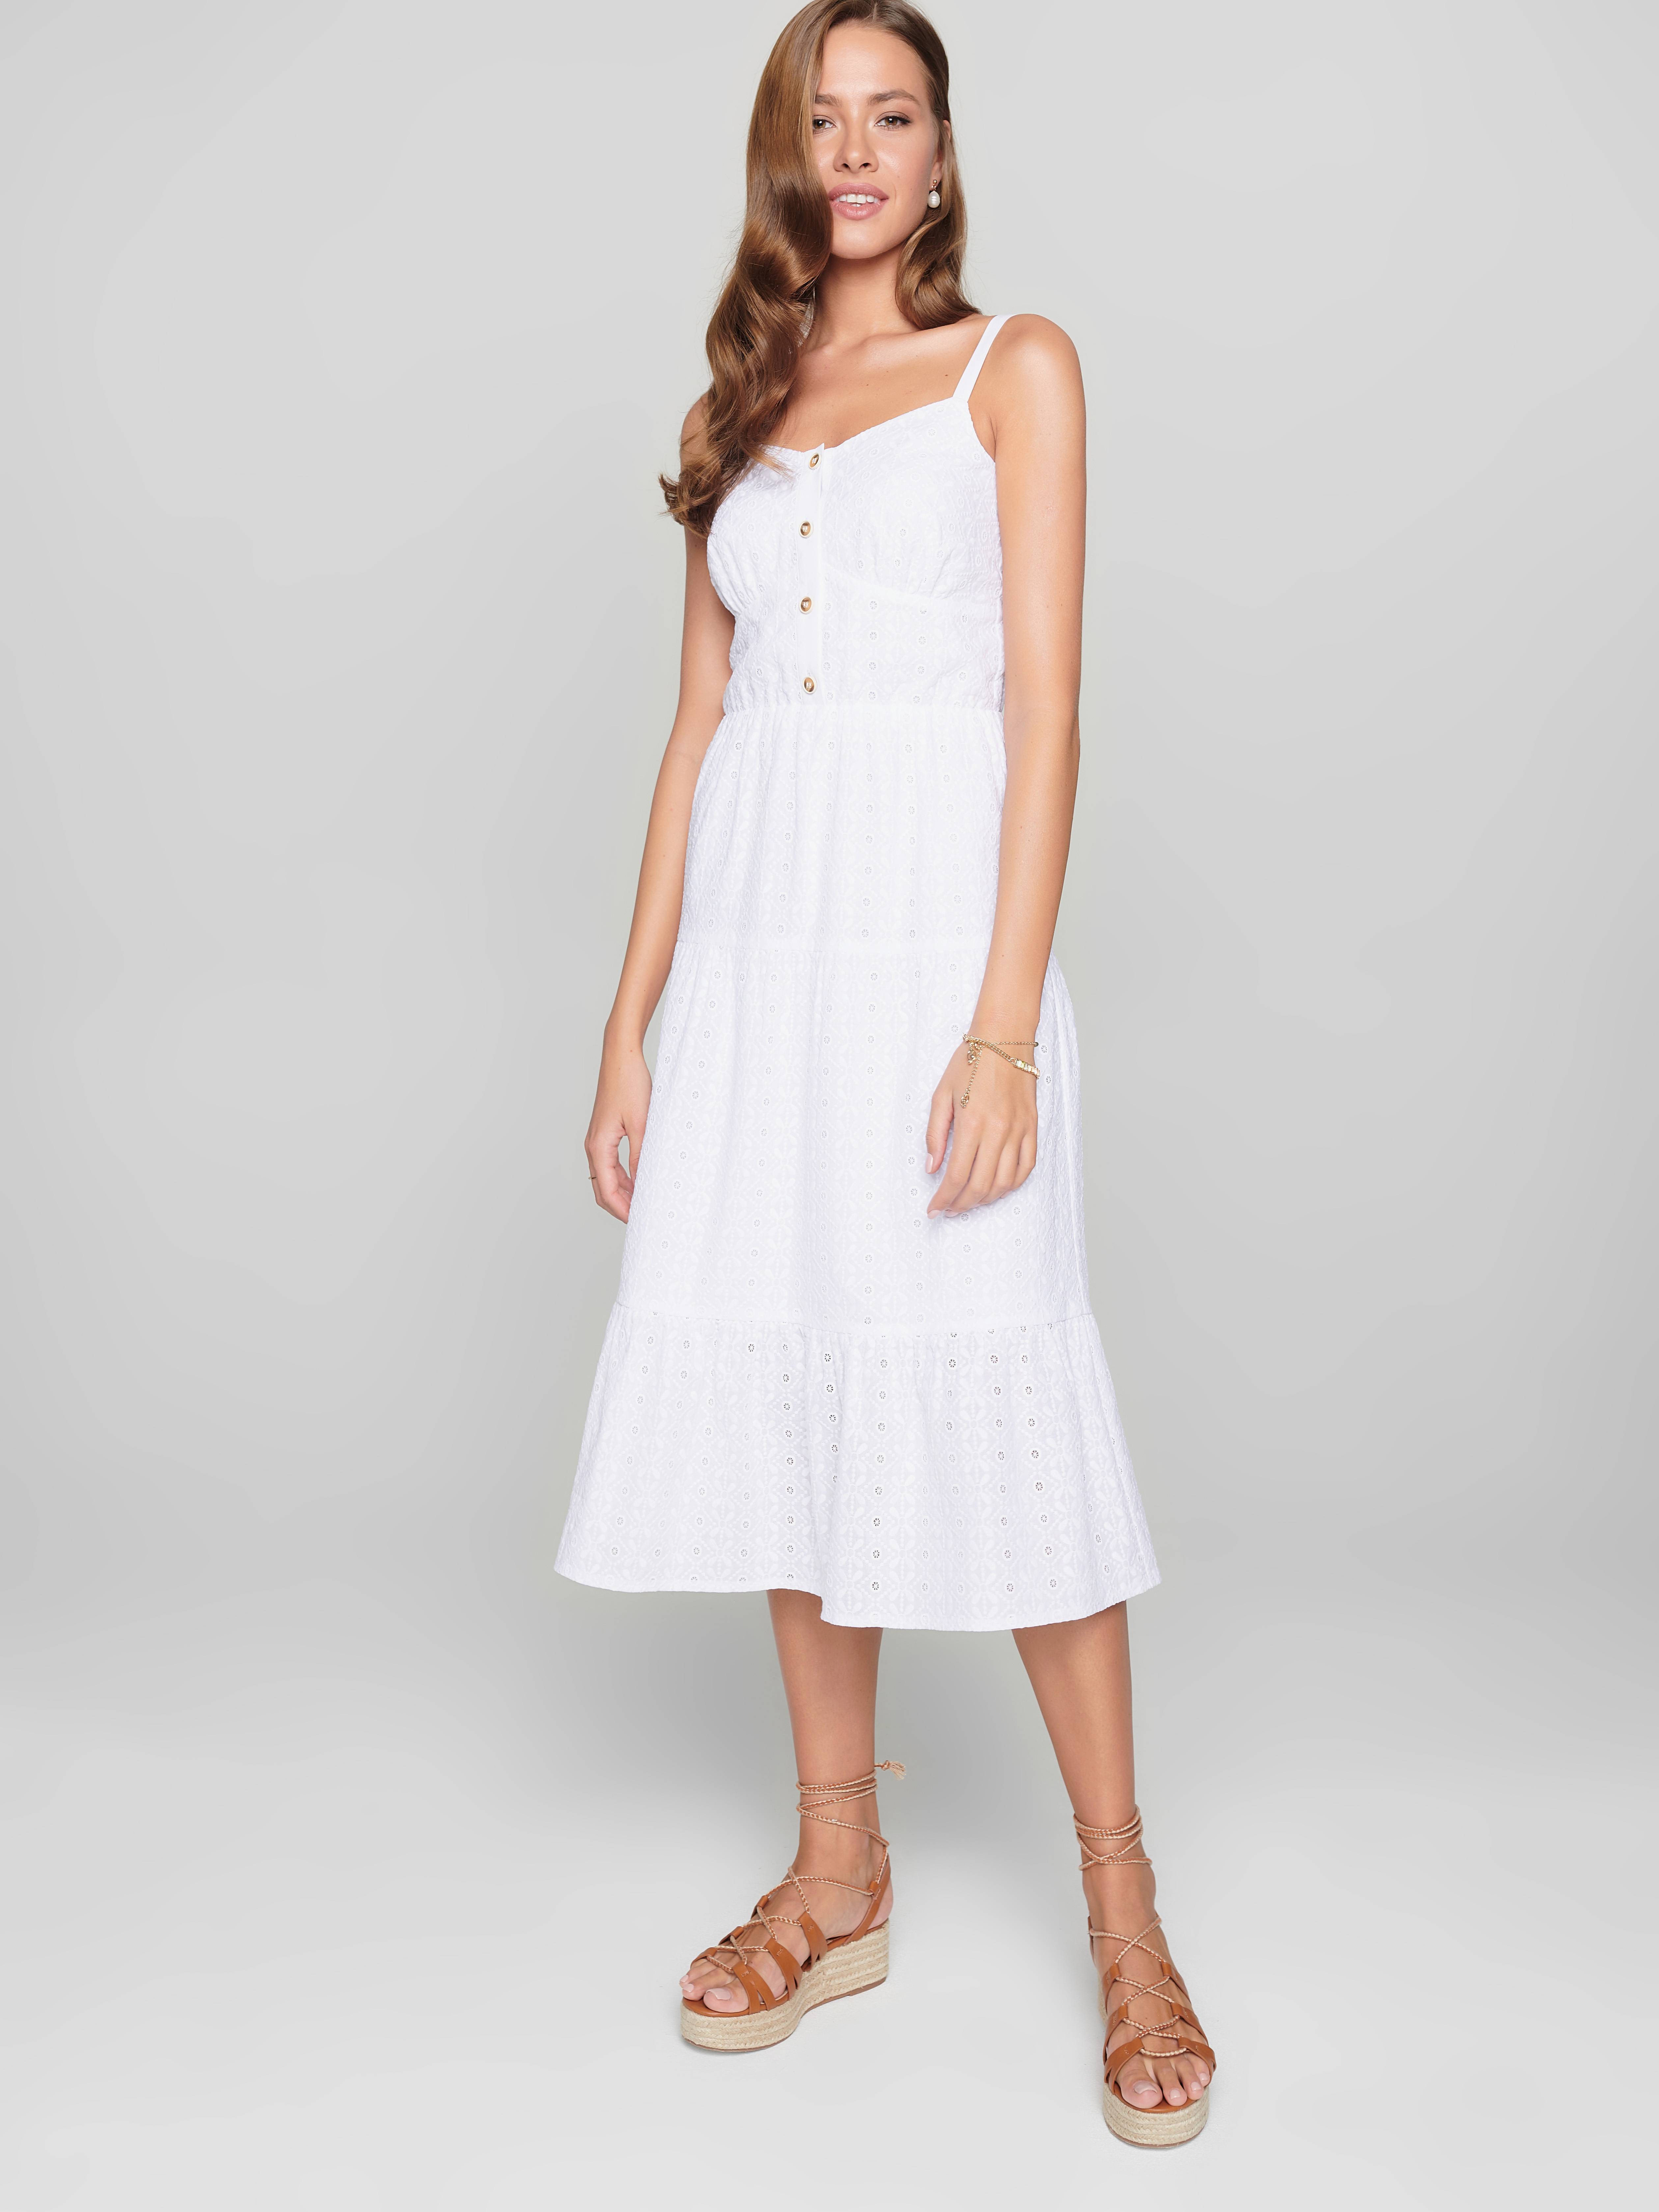 Легкое платье с вышивкой ришелье на тонких бретелях из хлопка премиального качества LPL 1143 Conte ⭐️, цвет white, размер 170-100-106 - фото 1